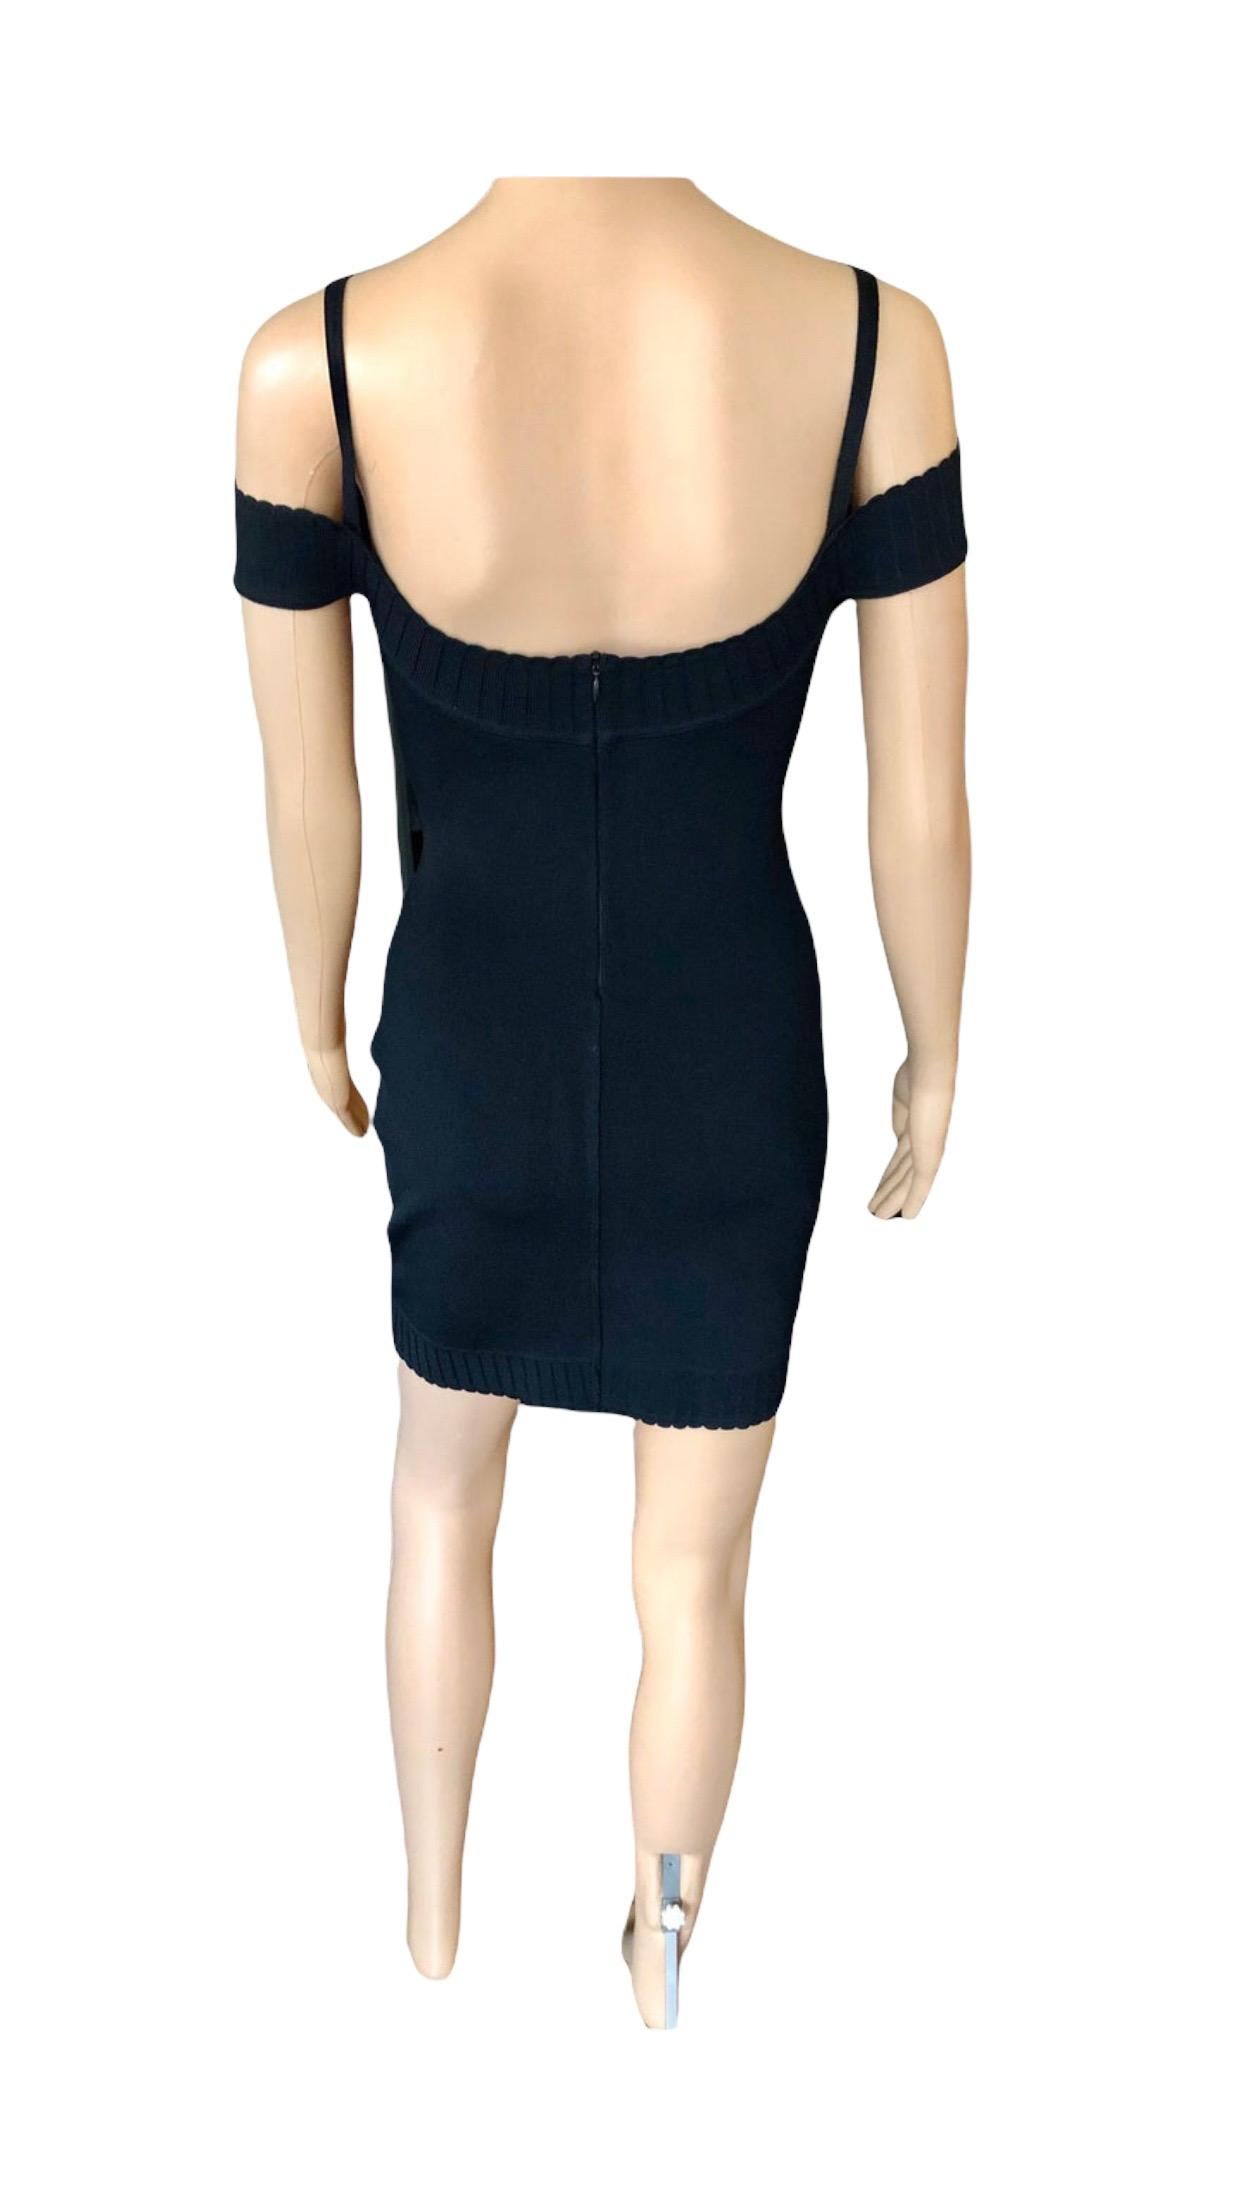 Azzedine Alaia S/S 1992 Vintage Off Shoulder Bodycon Black Dress For Sale 4